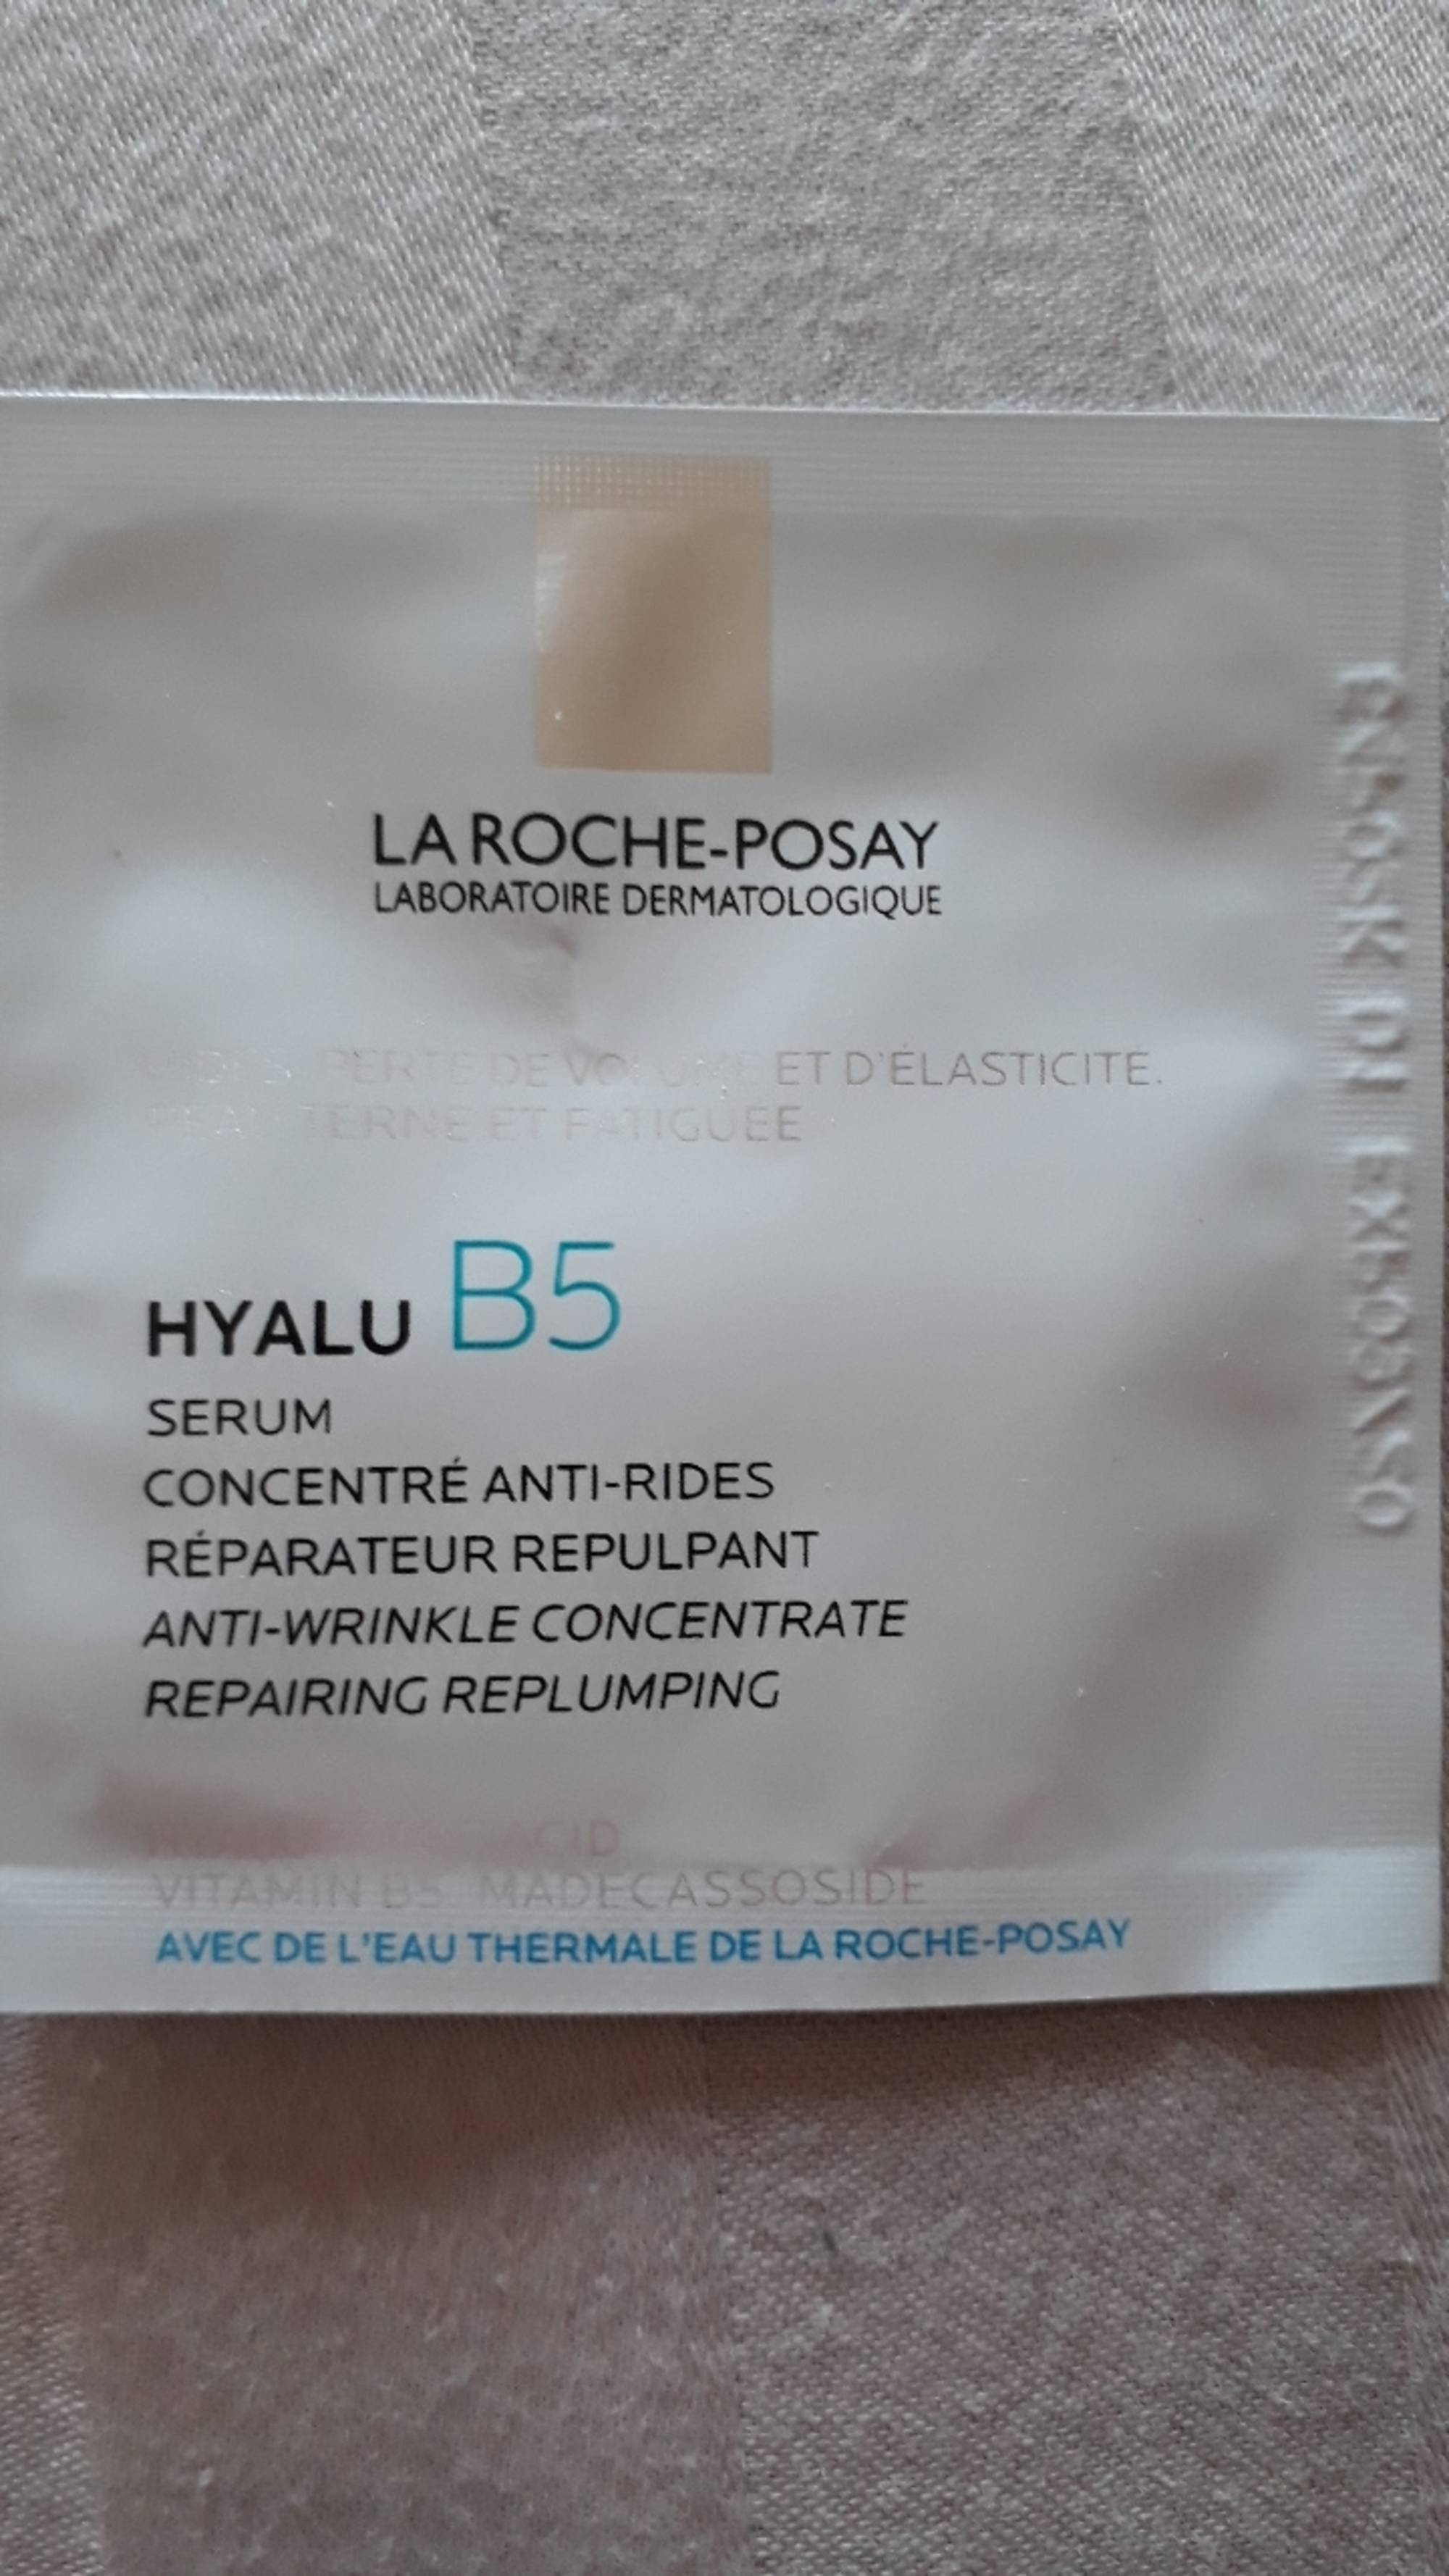 LA ROCHE-POSAY - Hyalu B5 - Serum concentré anti-rides